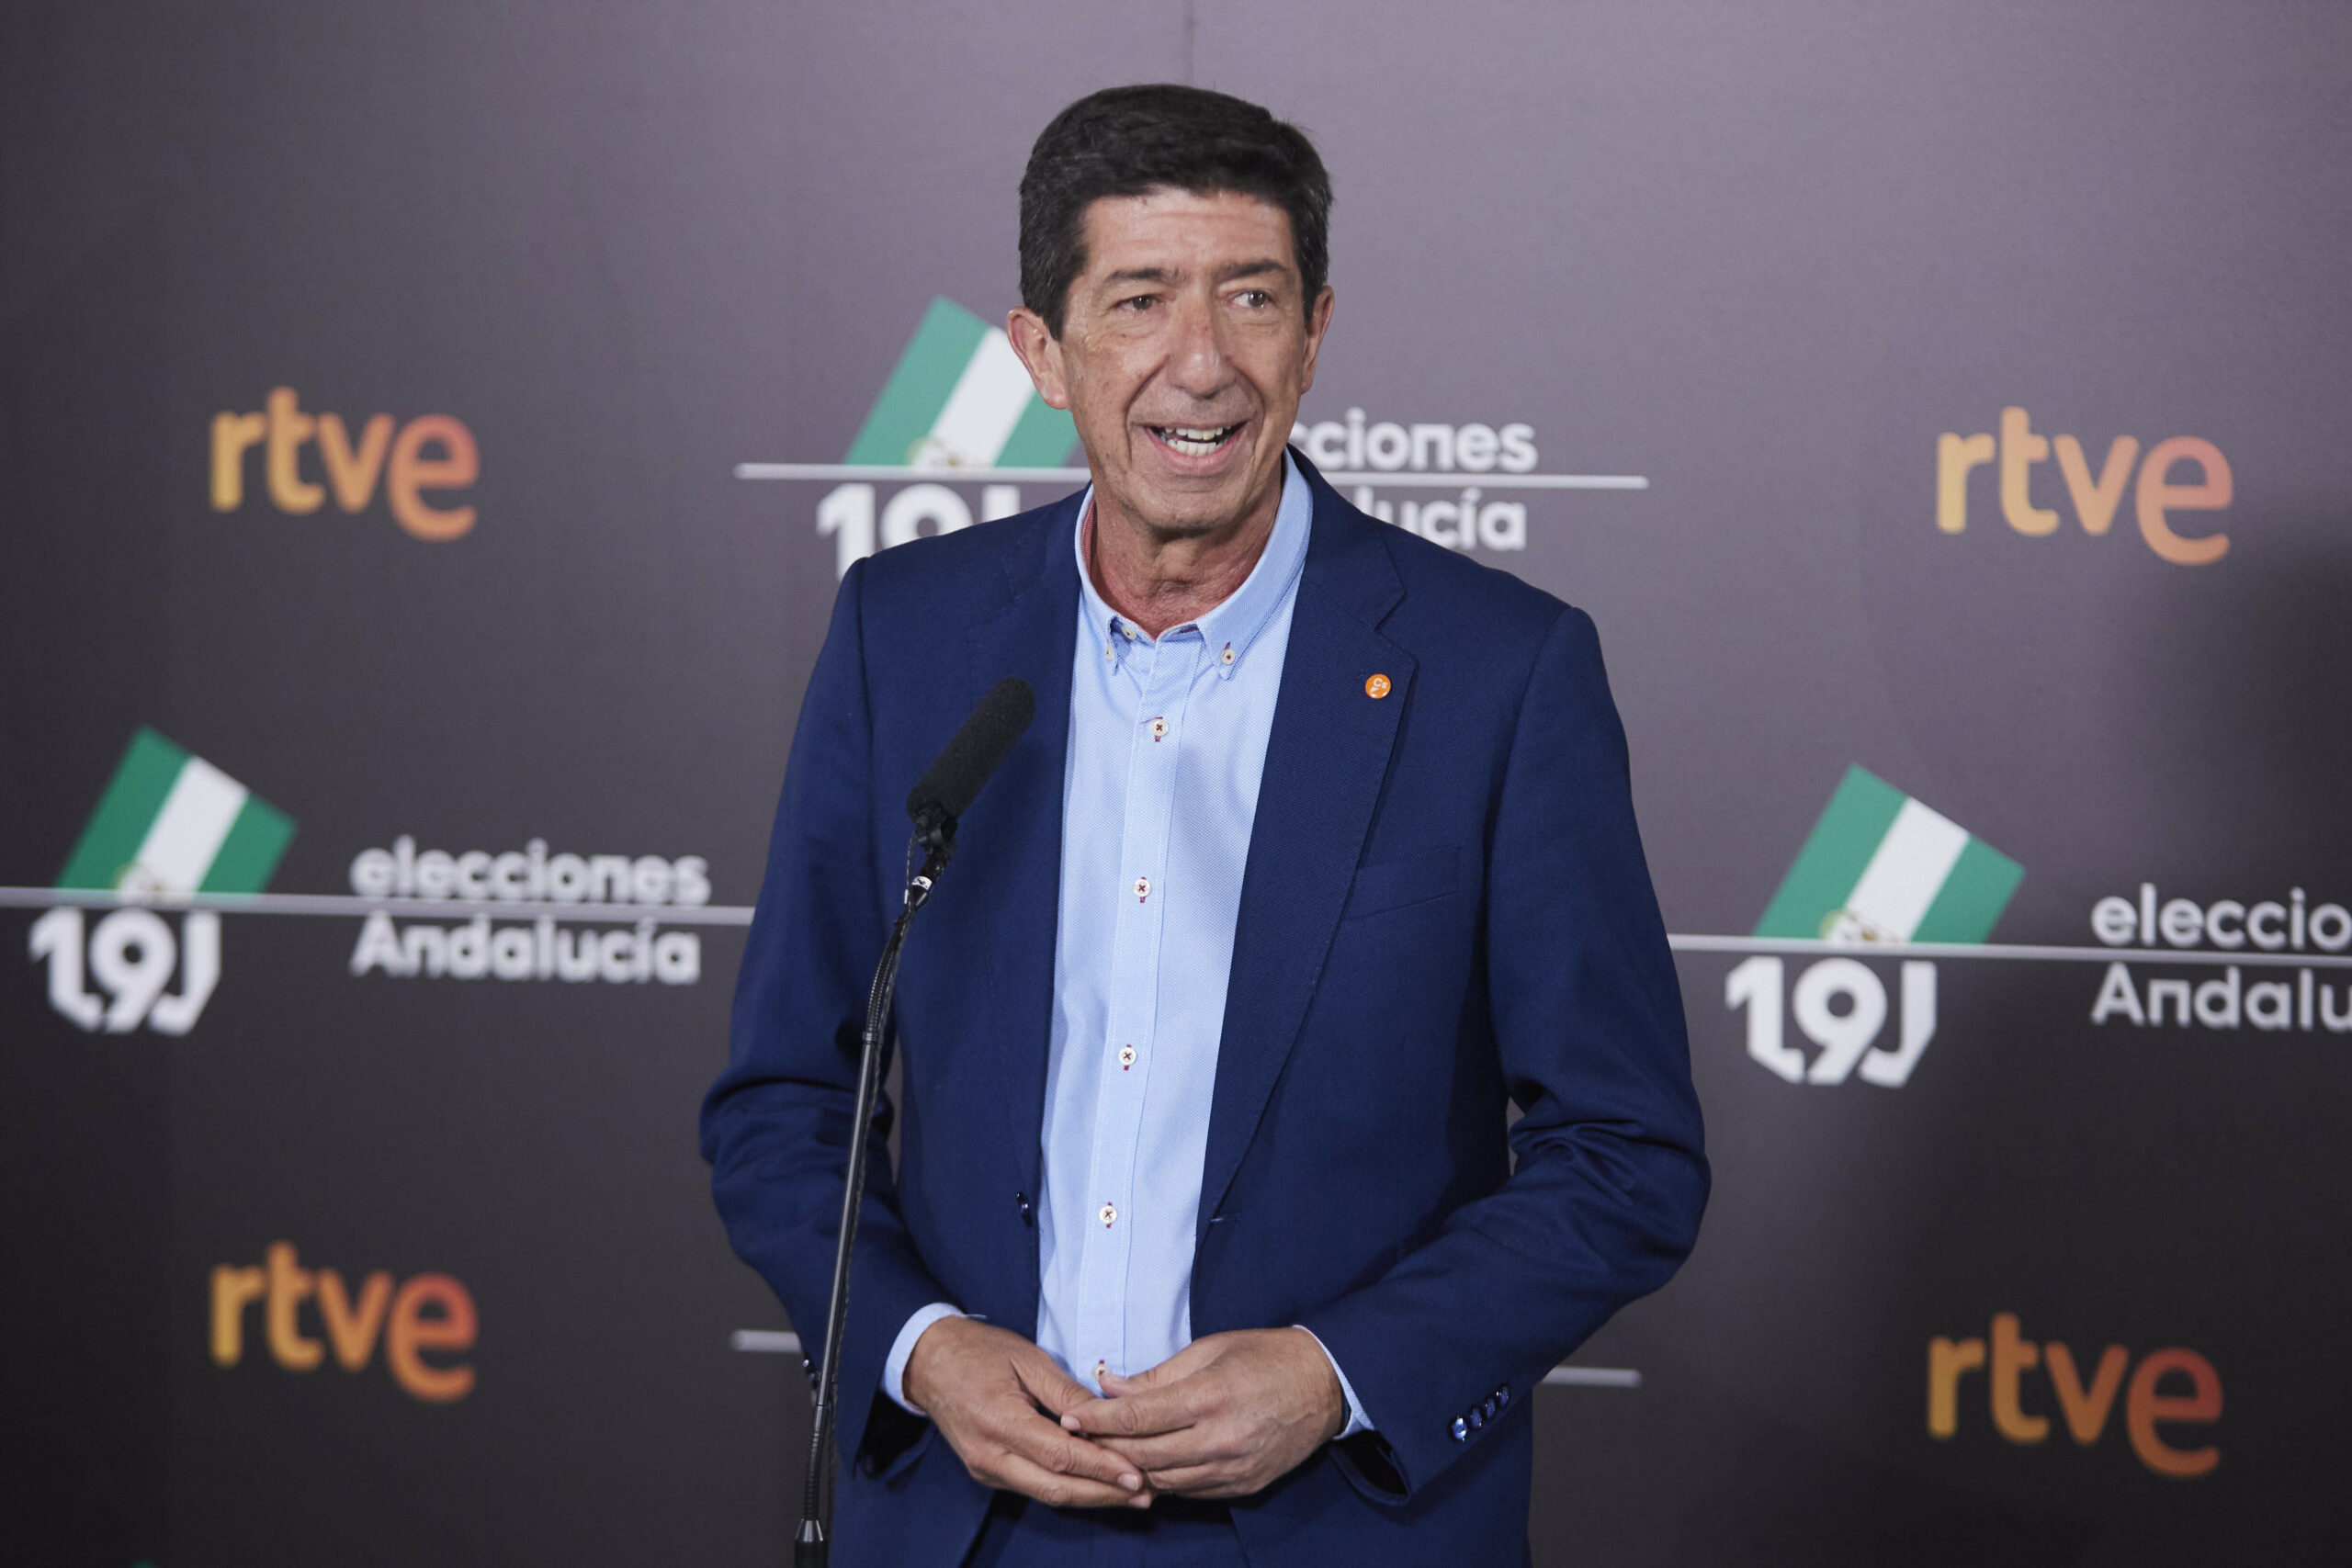 El vicepresidente de la Junta de Andalucía, Juan Marín, este martes tras el debate televisivo. FOTO/ Europa Press